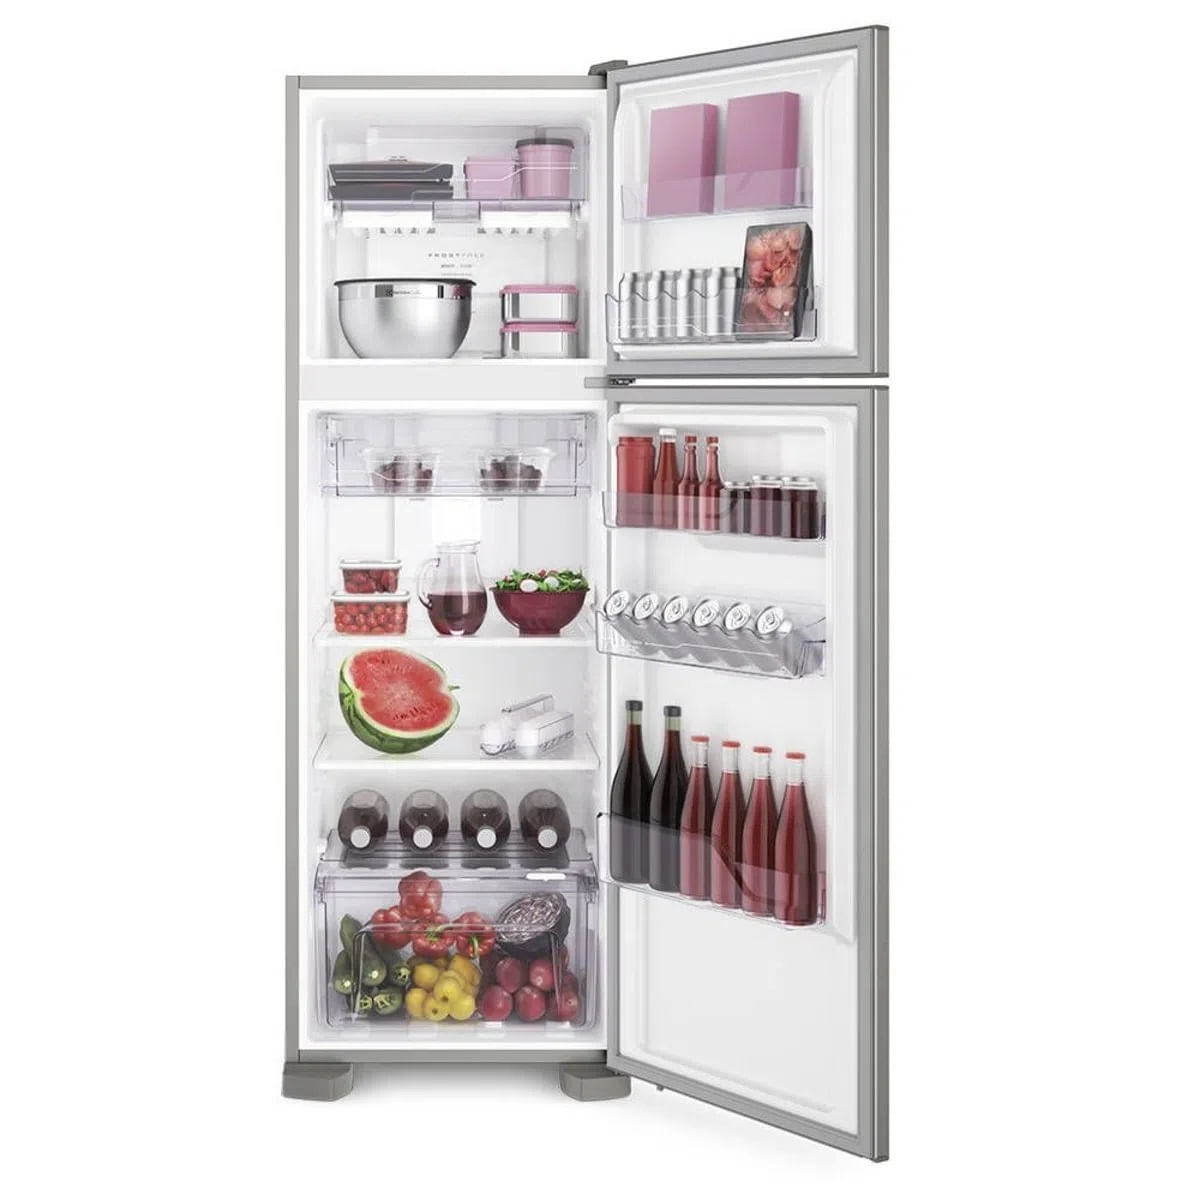 geladeira-electrolux-degelo-automatico-duplex-2-portas-dfx41-371-litros-inox-110v-4.jpg